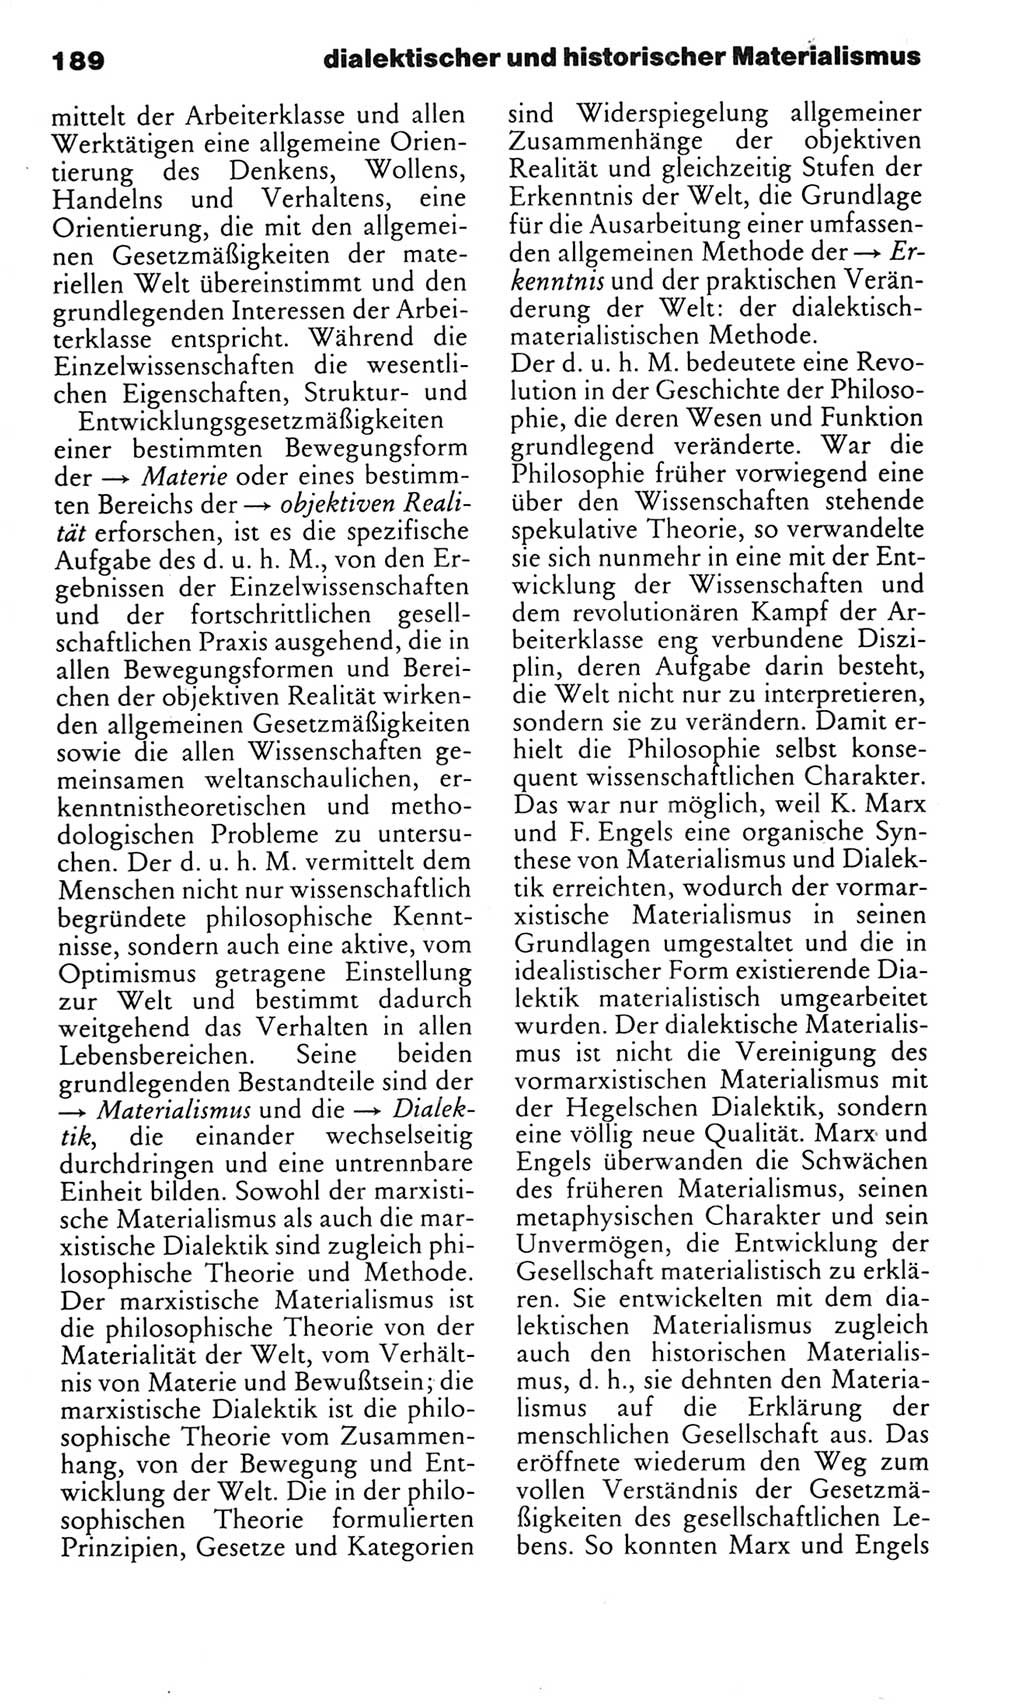 Kleines politisches Wörterbuch [Deutsche Demokratische Republik (DDR)] 1985, Seite 189 (Kl. pol. Wb. DDR 1985, S. 189)